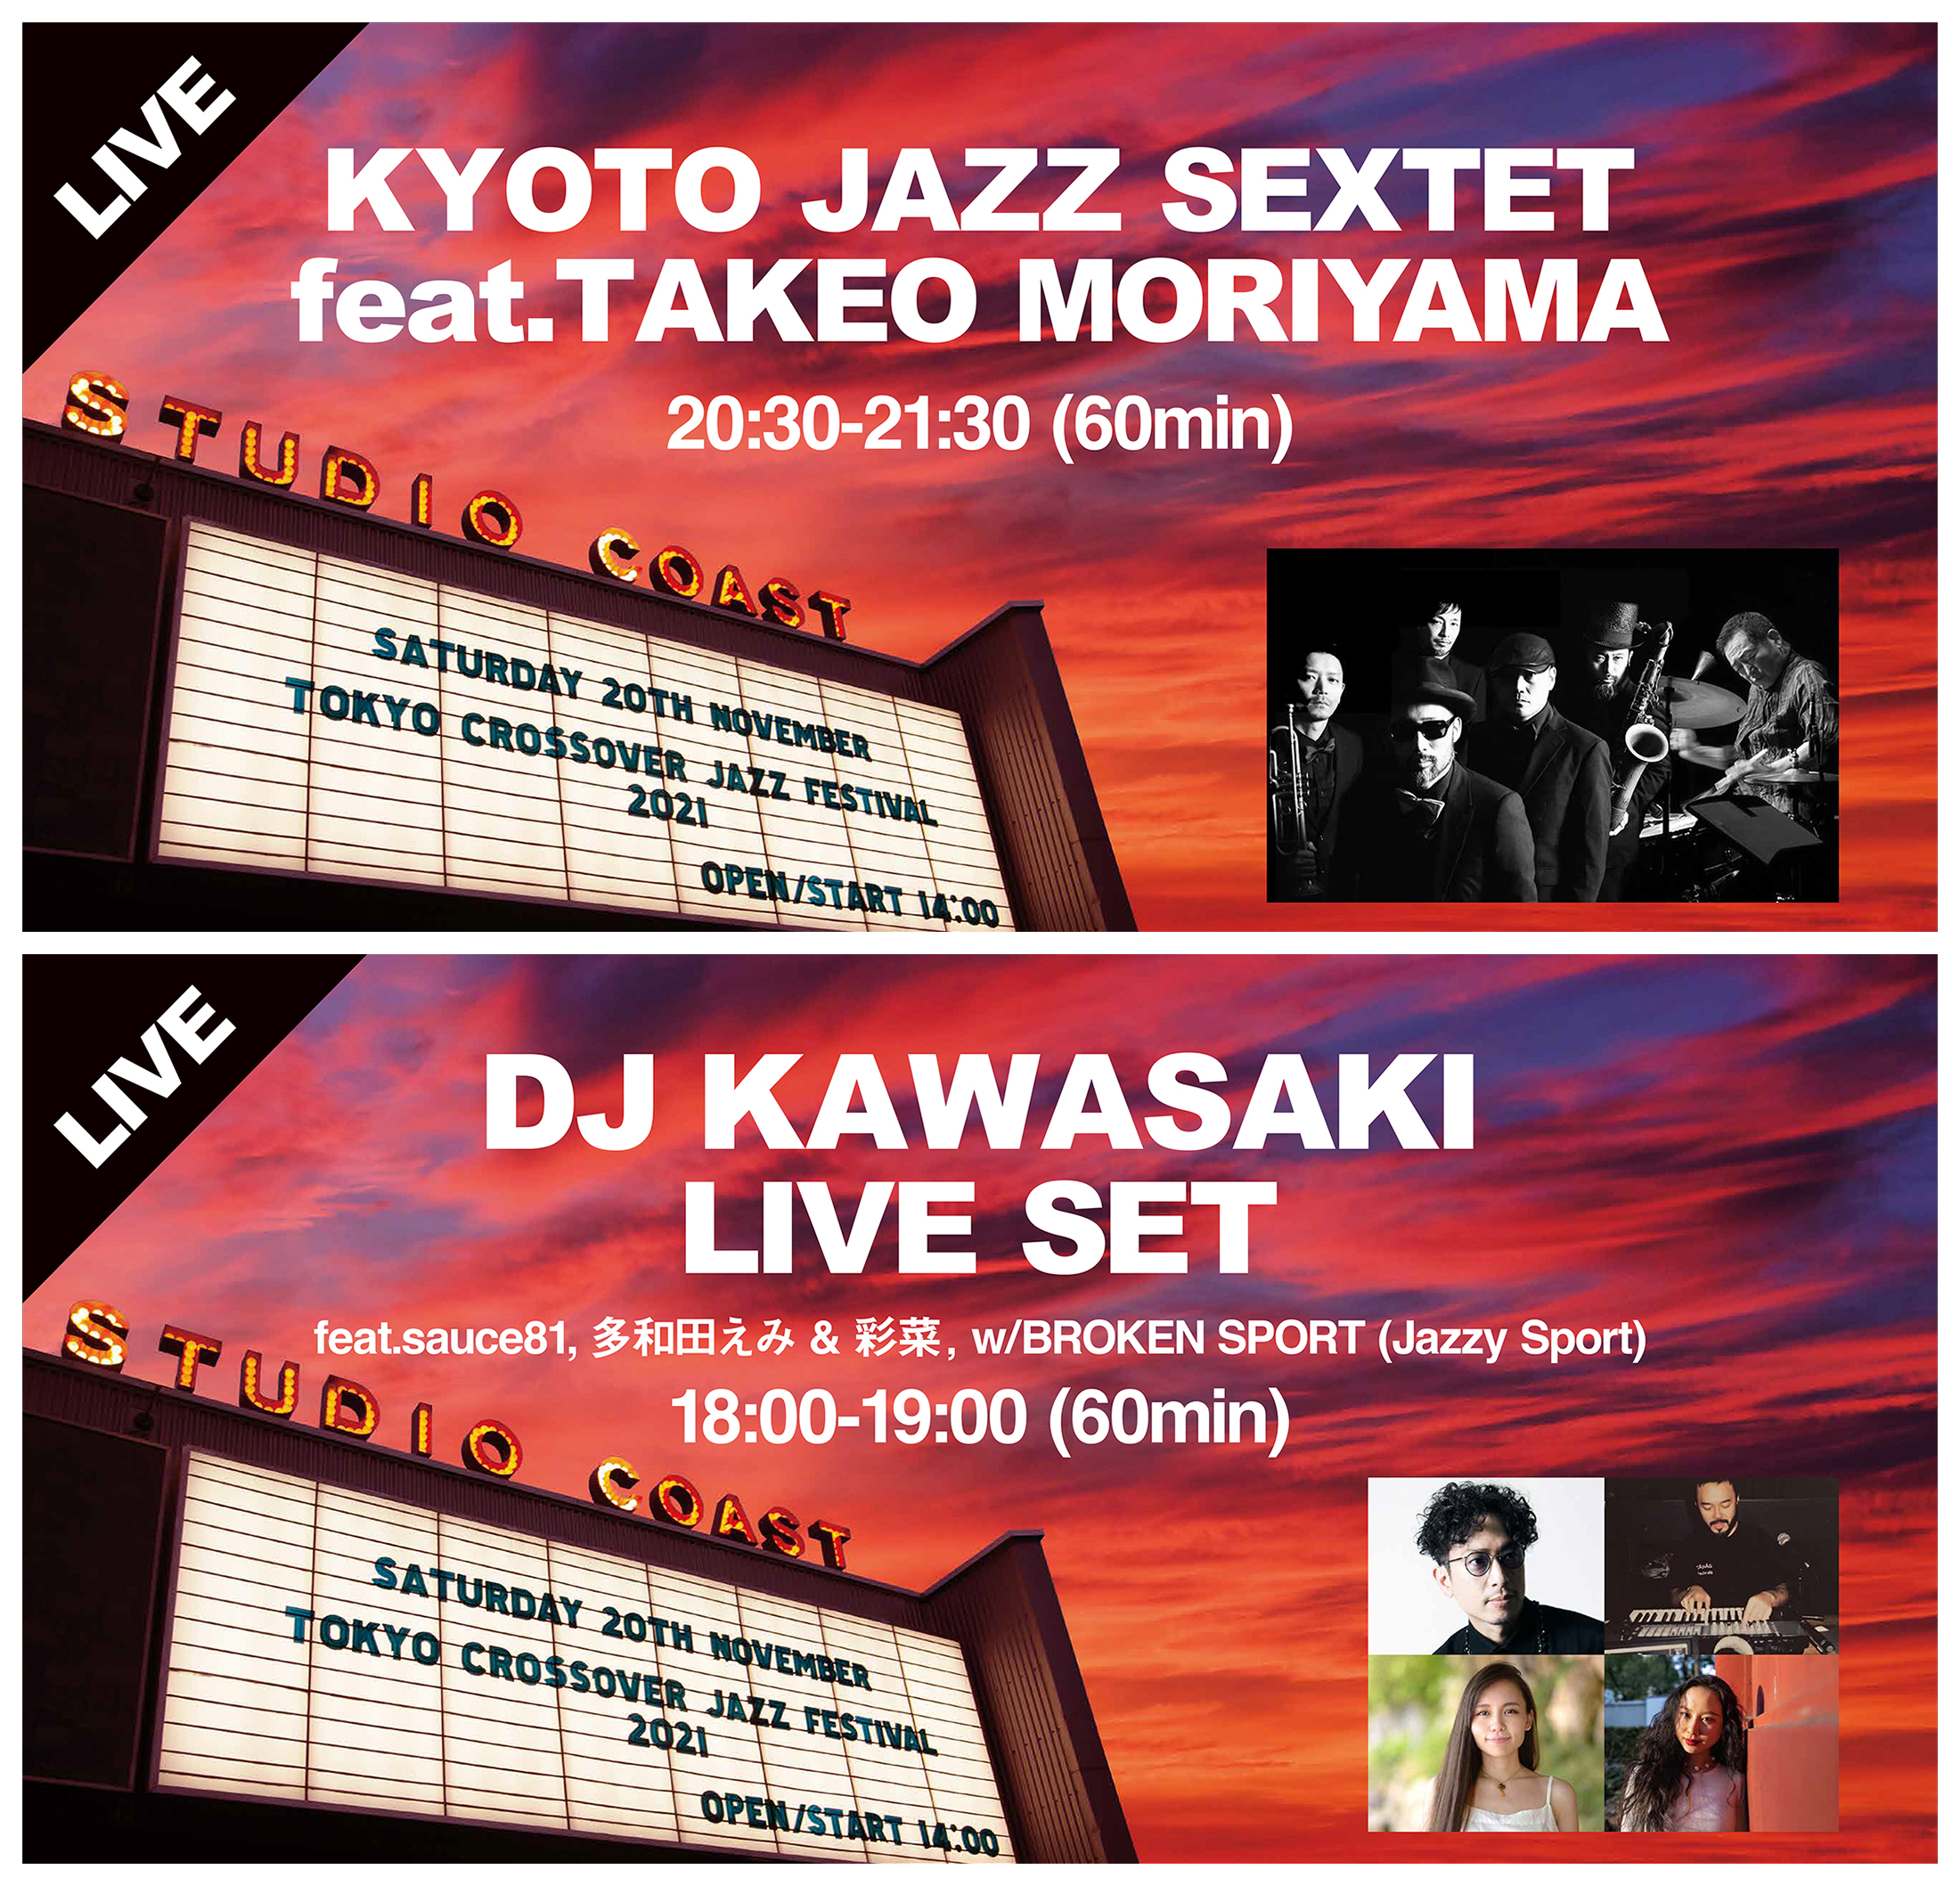 Tokyo Crossover/Jazz Festival 2021 ライブ配信